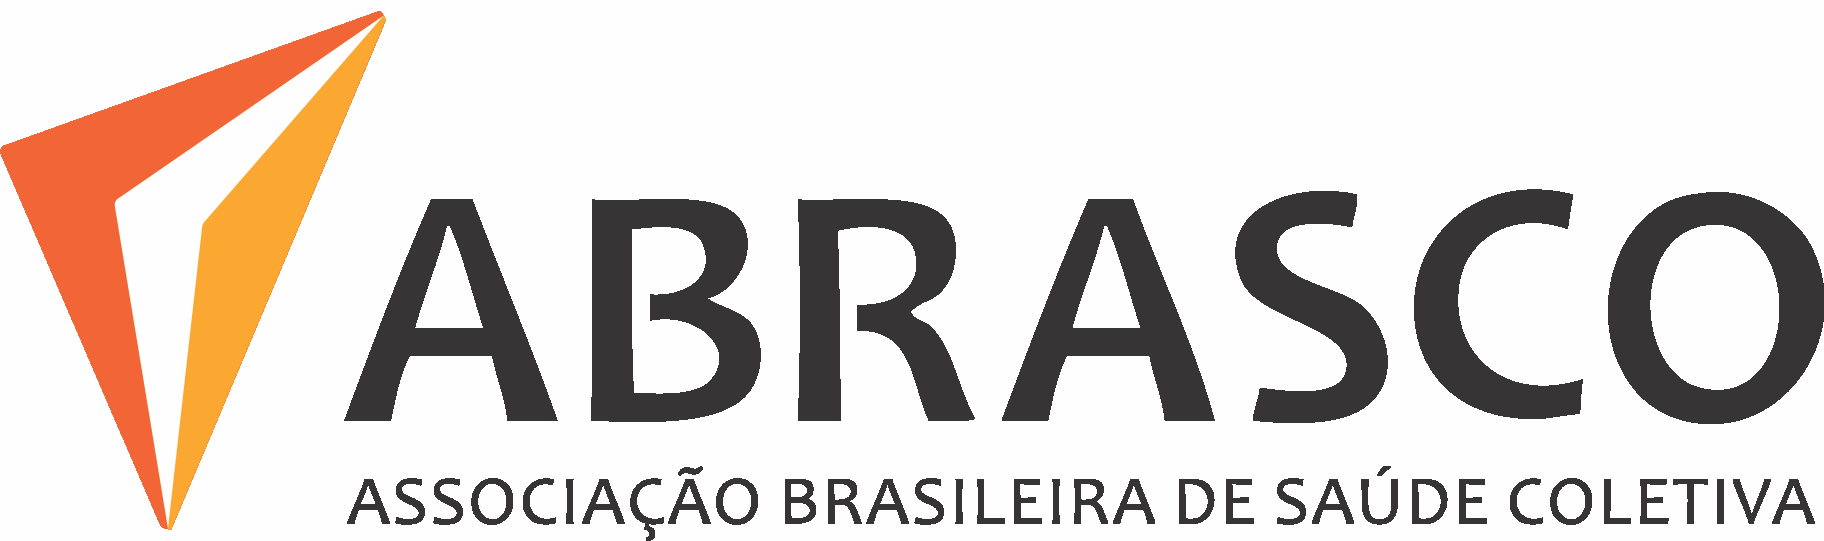 Associação Brasileira de Saúde Coletiva